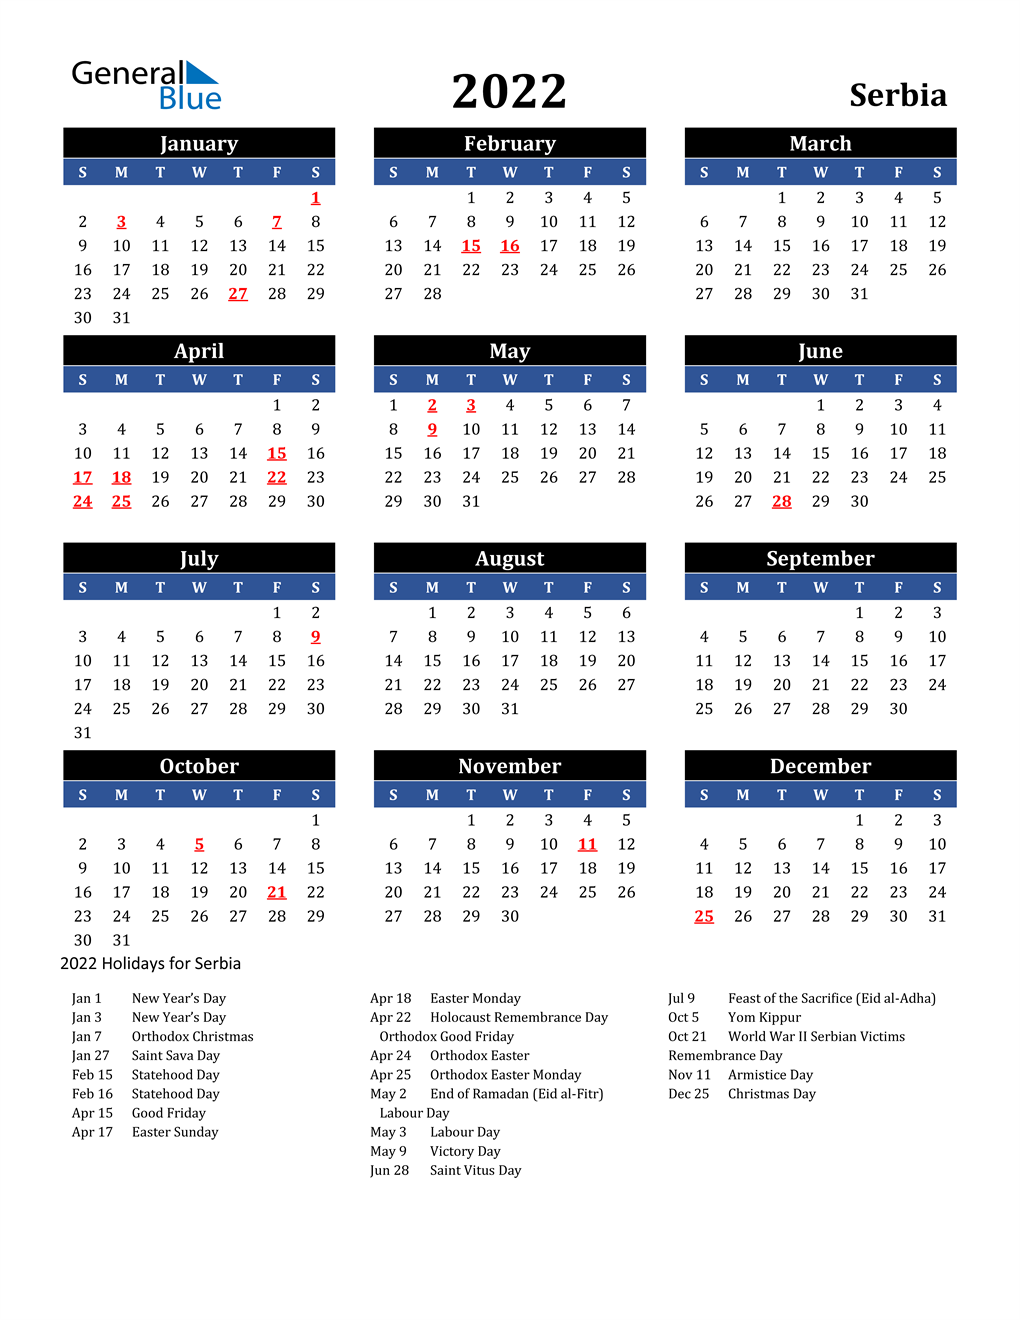 Serbian Orthodox Calendar 2022 2022 Serbia Calendar With Holidays